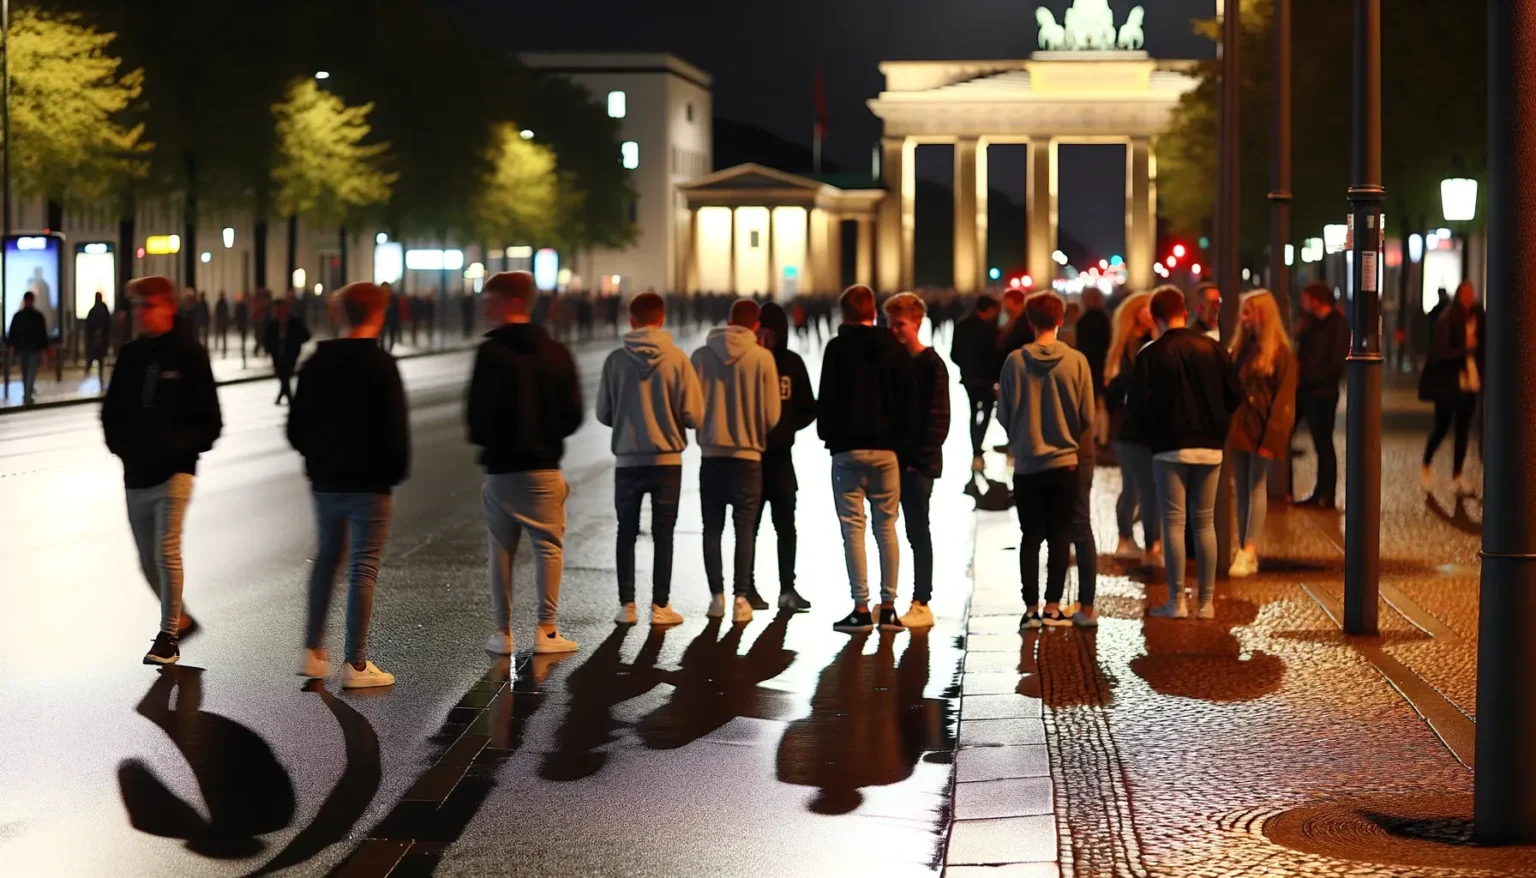 Eine Gruppe von Menschen, die in einer Reihe auf einer beleuchteten Straße nachts gehen, mit dem Brandenburger Tor im Hintergrund. Die Szene wird durch die Straßenbeleuchtung dramatisch beleuchtet und wirft lange Schatten auf den nassen Boden.